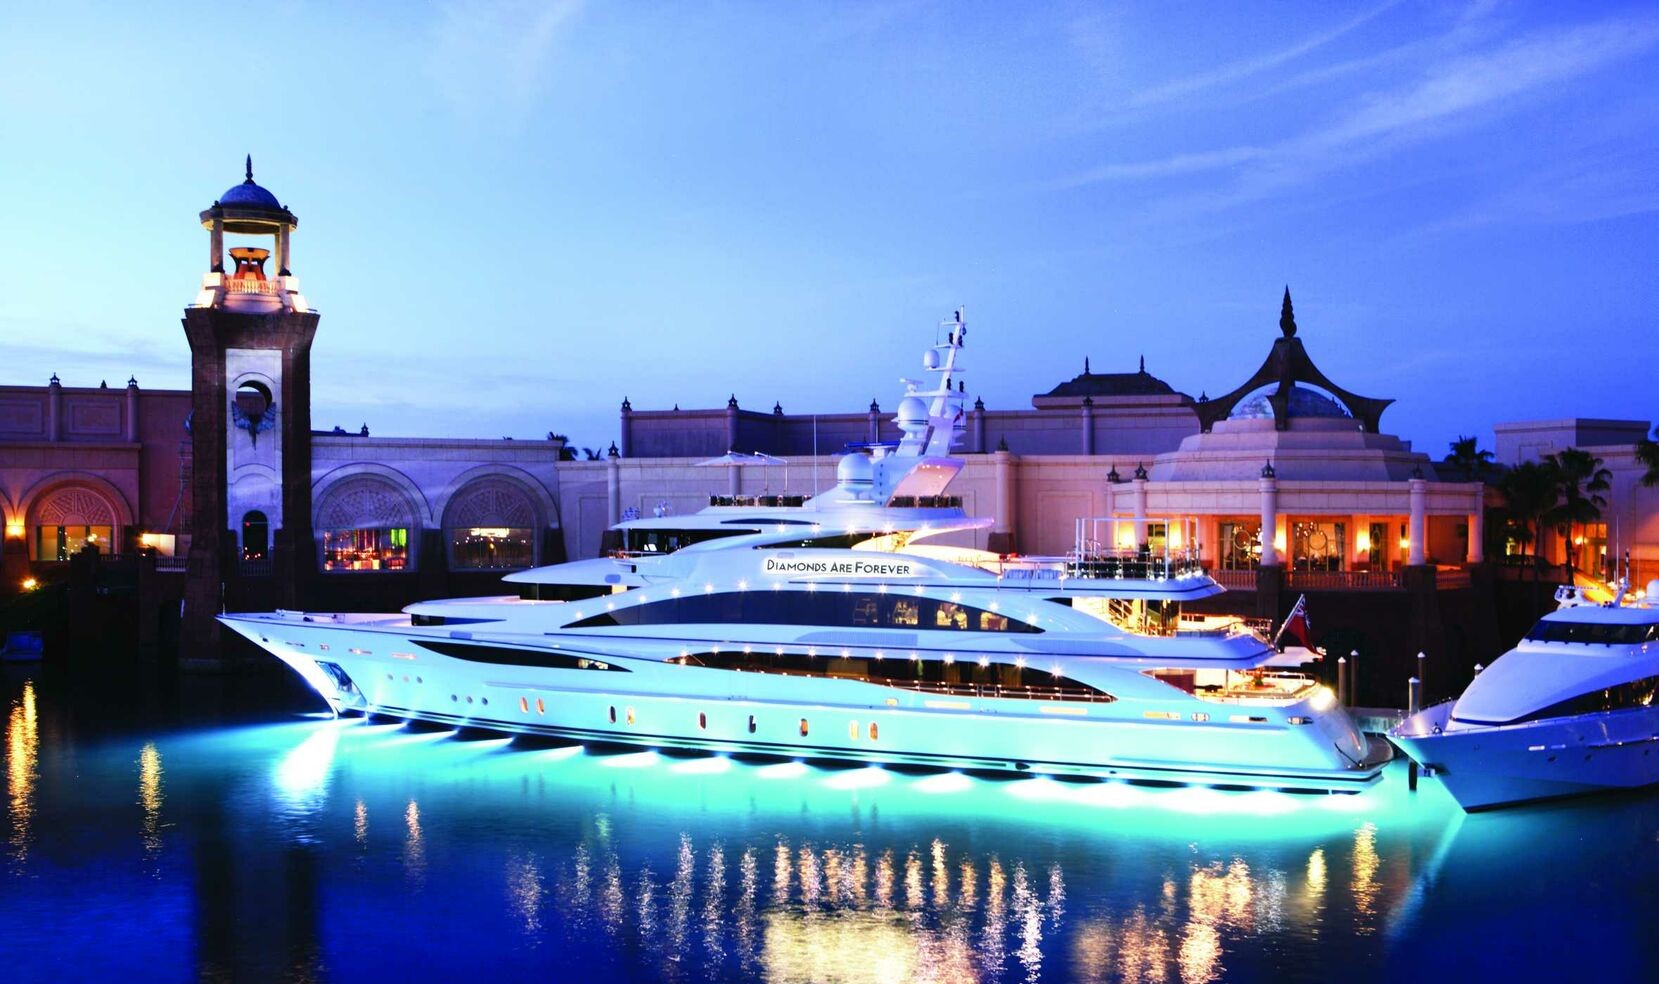 Diamonds Are Forever: John Staluppi’s Luxury Yacht Marvel